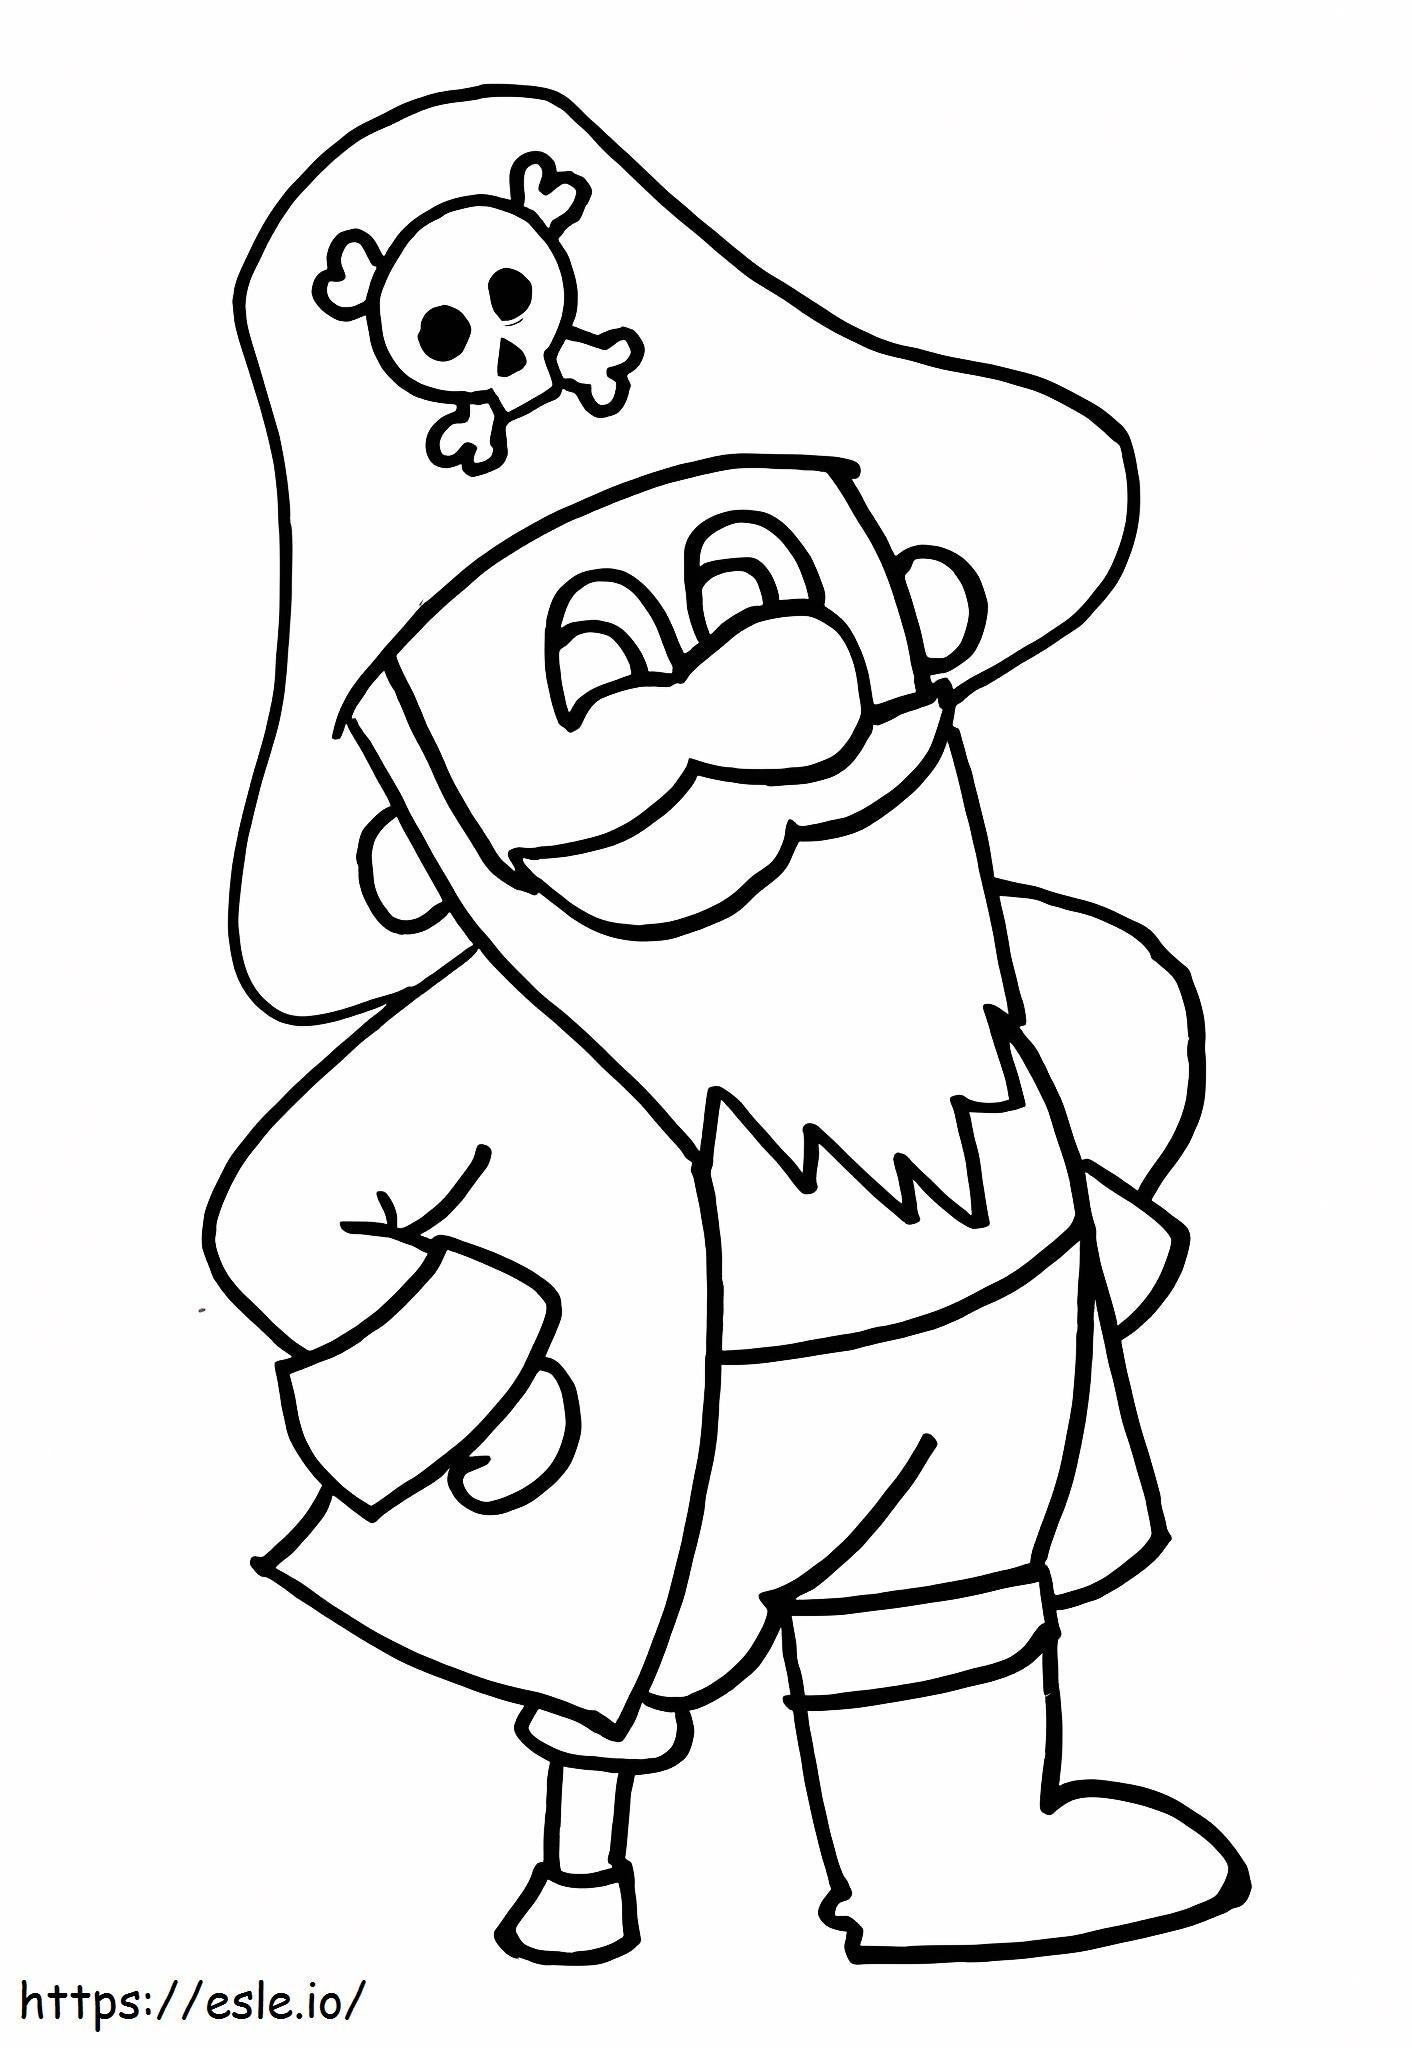 Velho pirata sorrindo para colorir